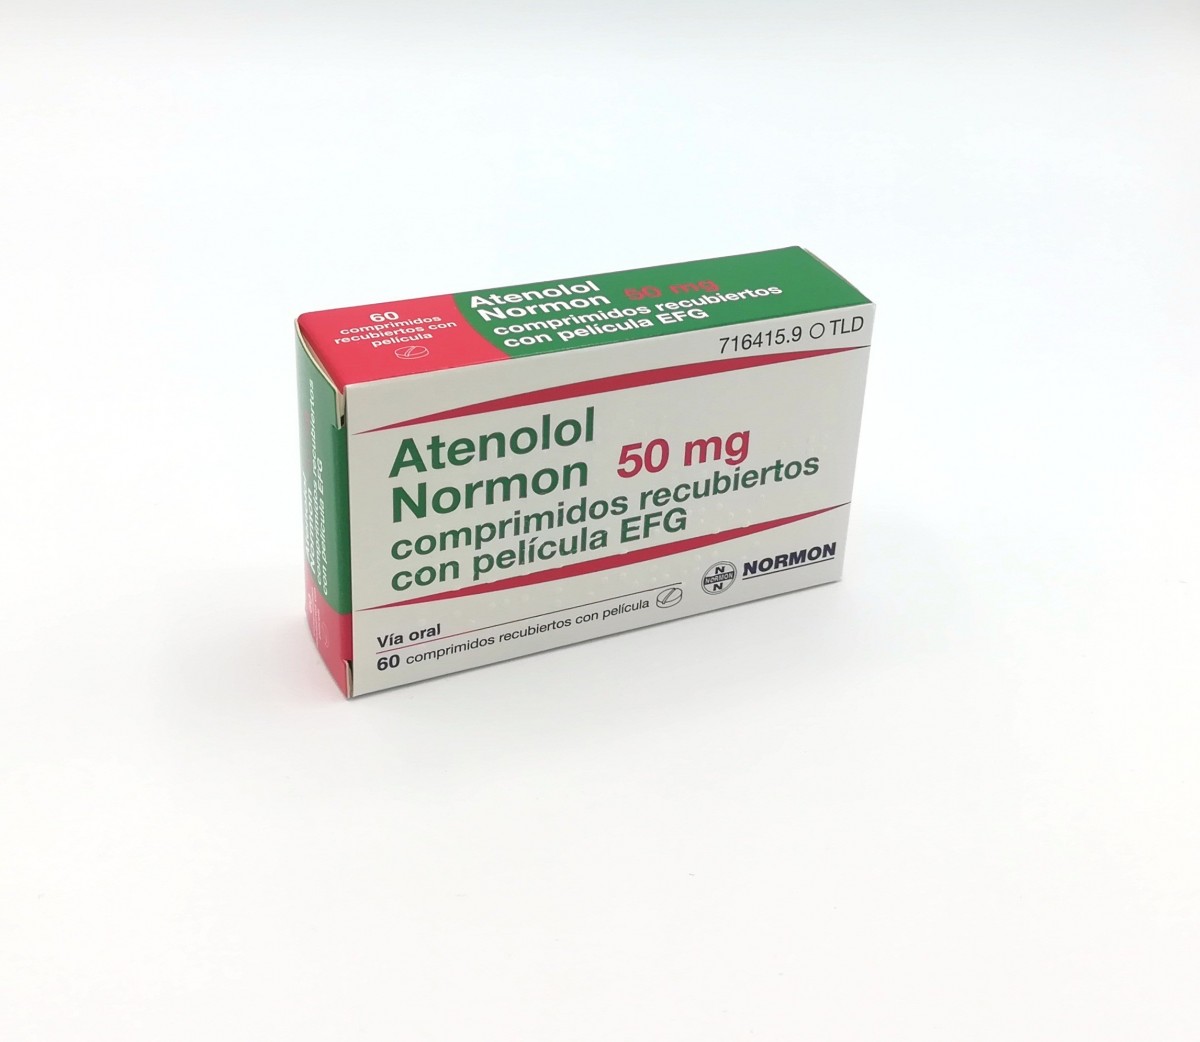 ATENOLOL NORMON 50 mg COMPRIMIDOS RECUBIERTOS EFG , 30 comprimidos fotografía del envase.